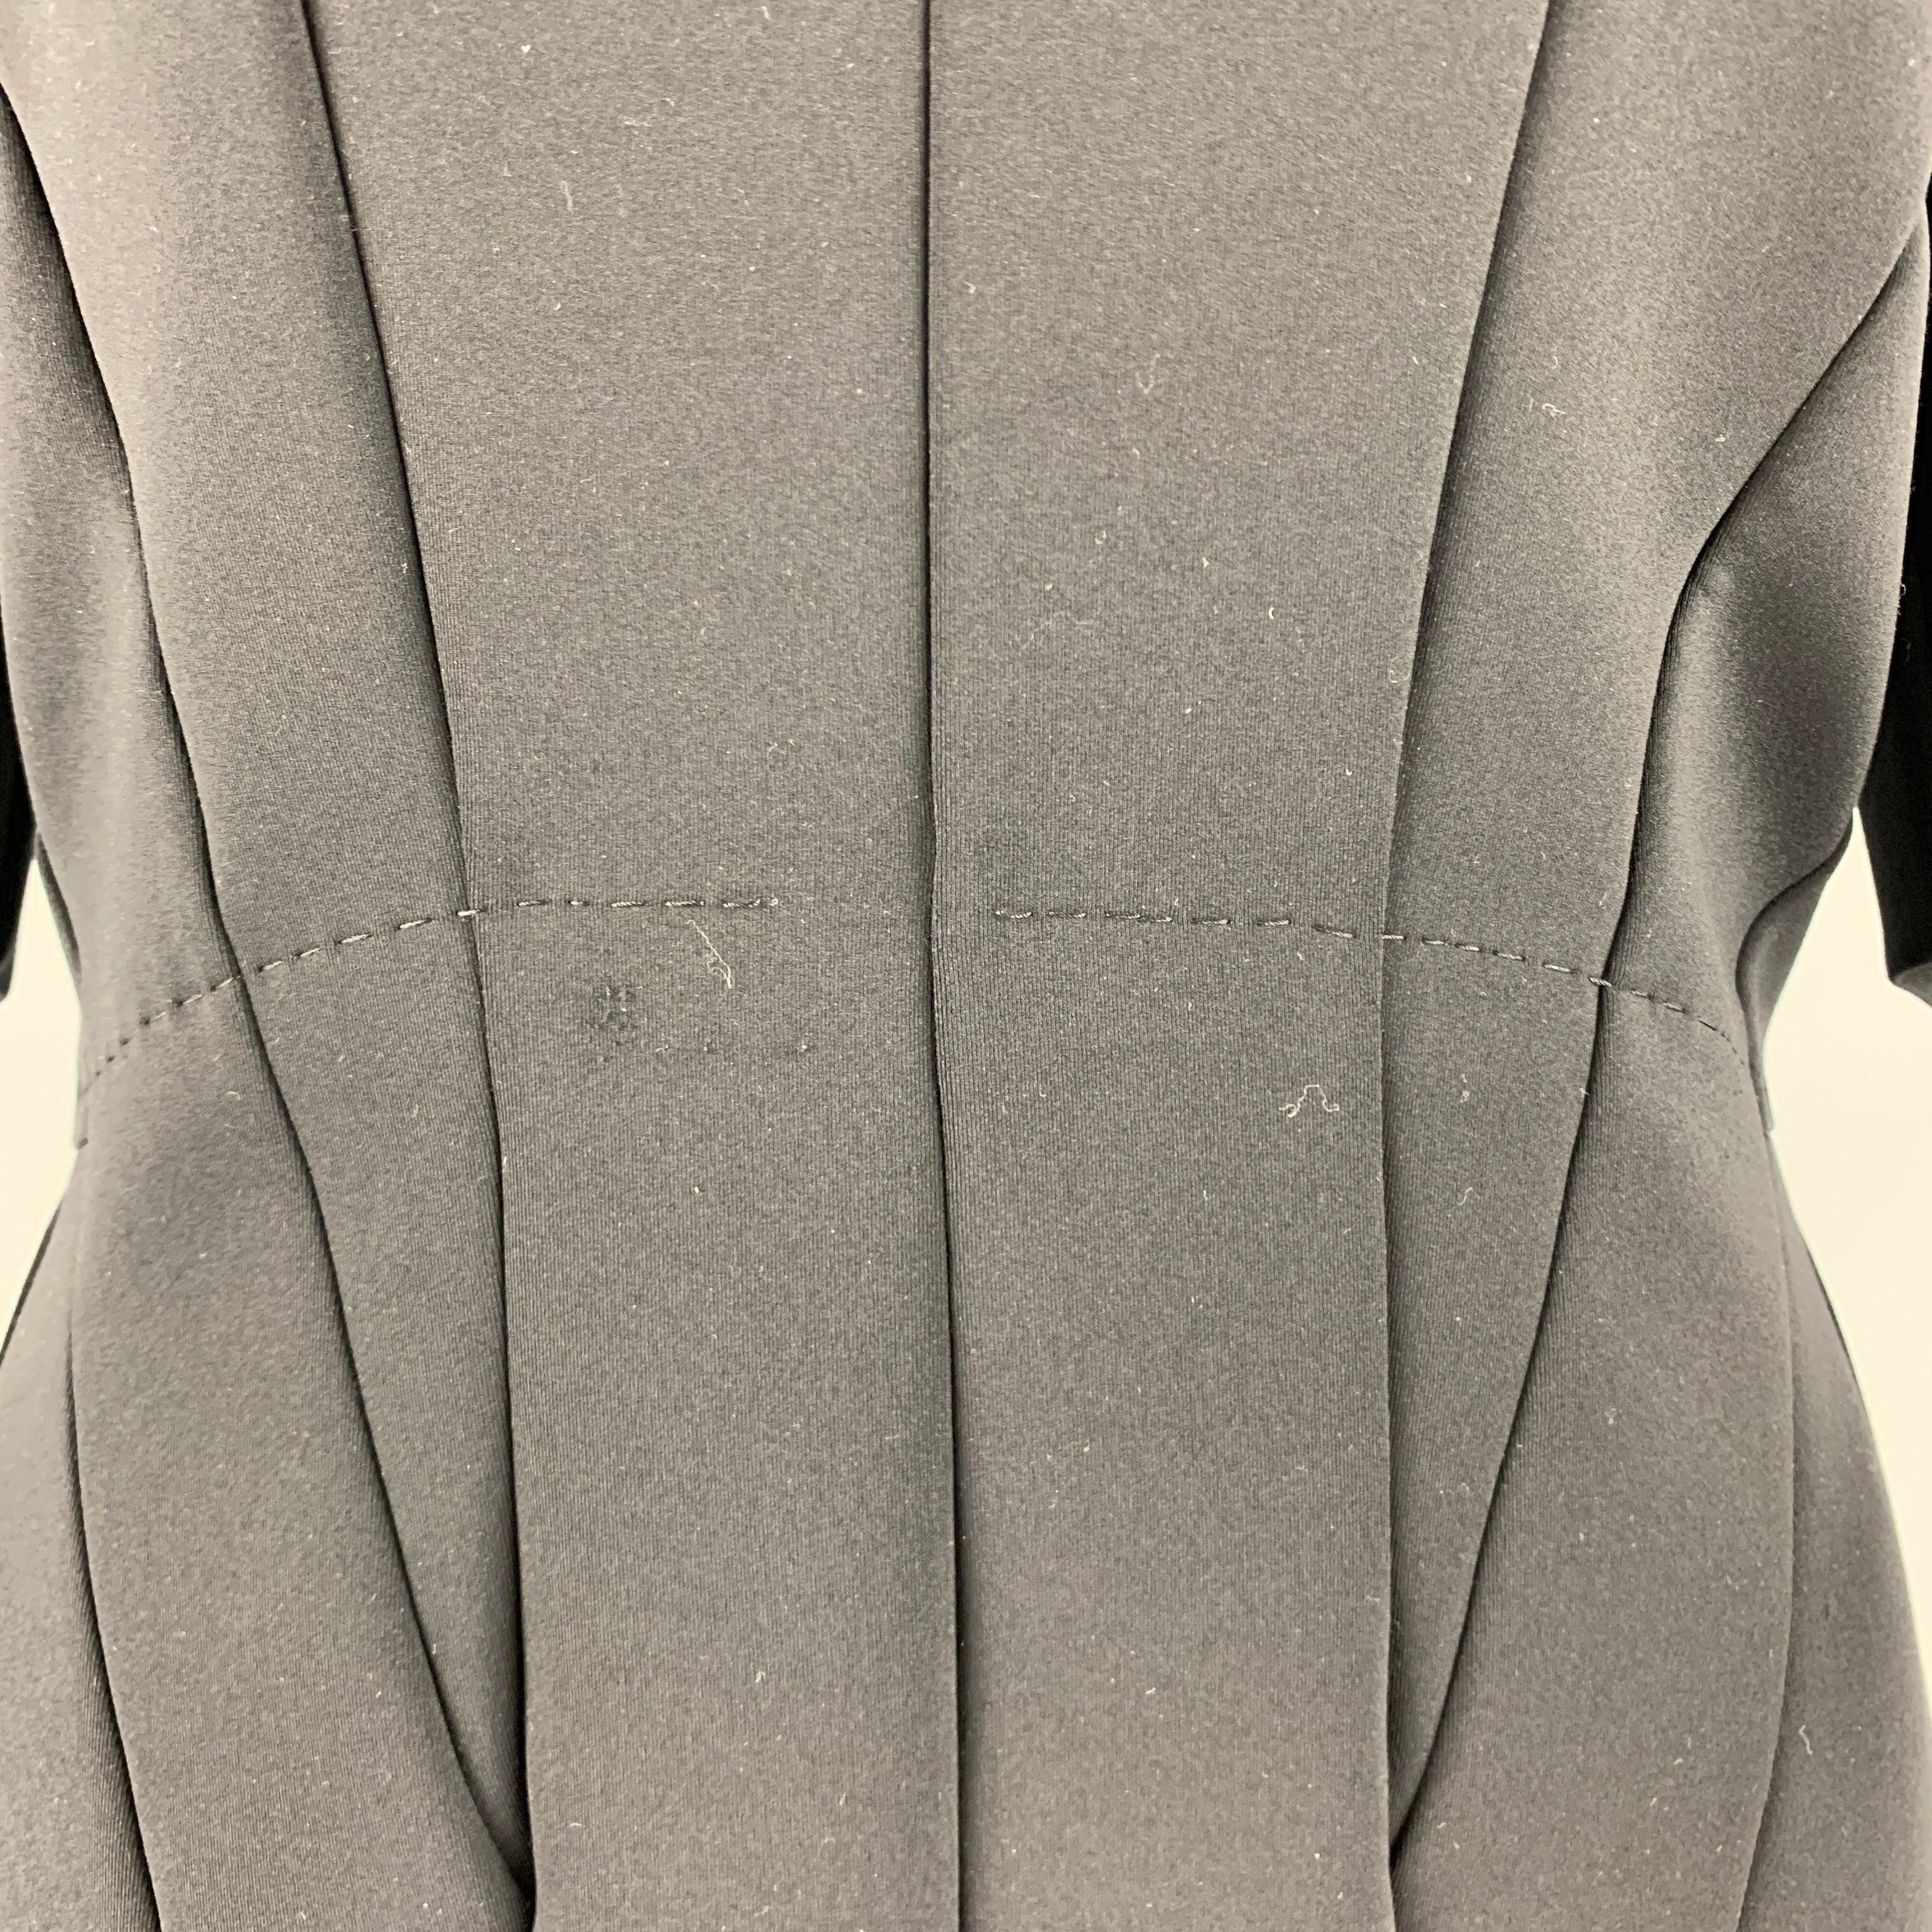 La robe SPORTMAX se compose d'un tricot noir en nylon et élasthanne, d'une jupe circulaire, de manches courtes et d'une fermeture à glissière dans le dos. Fabriqué en Italie. Très bon état. Tache mineure. 

Marqué :   L 

Mesures : 
 
Épaule : 16.5